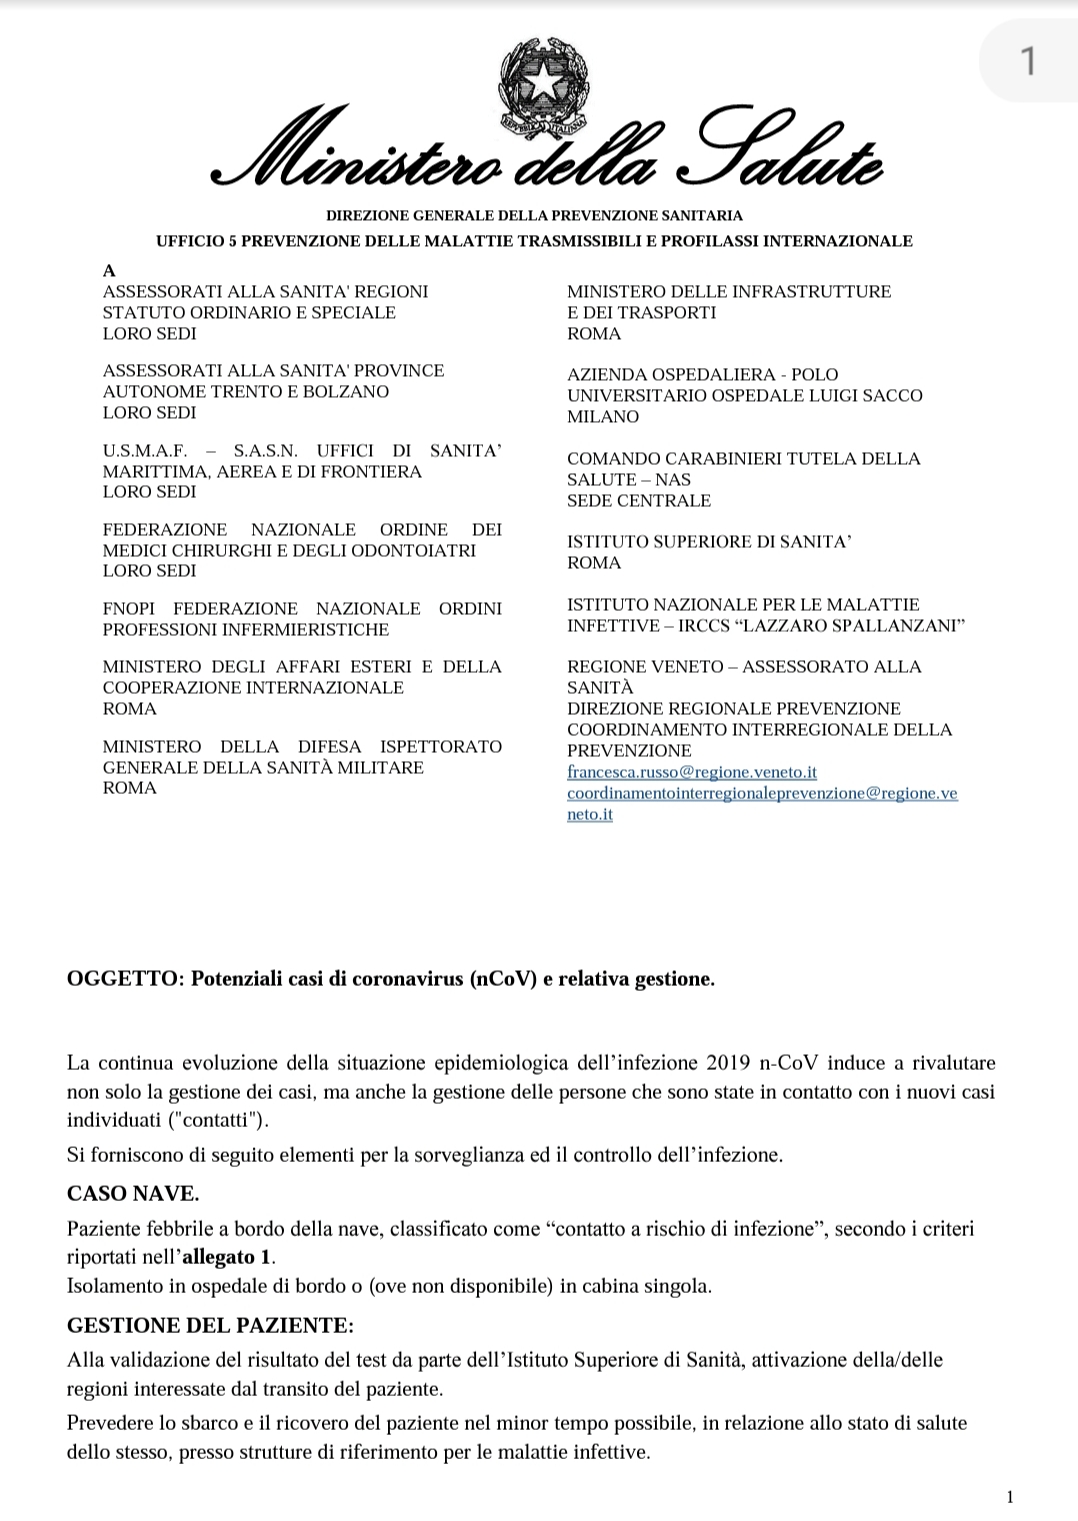 Avviso Del Ministrero Della Salute Circa I Potenziali Casi Di Coronavirus E Relativa Gestione Opi Bergamo